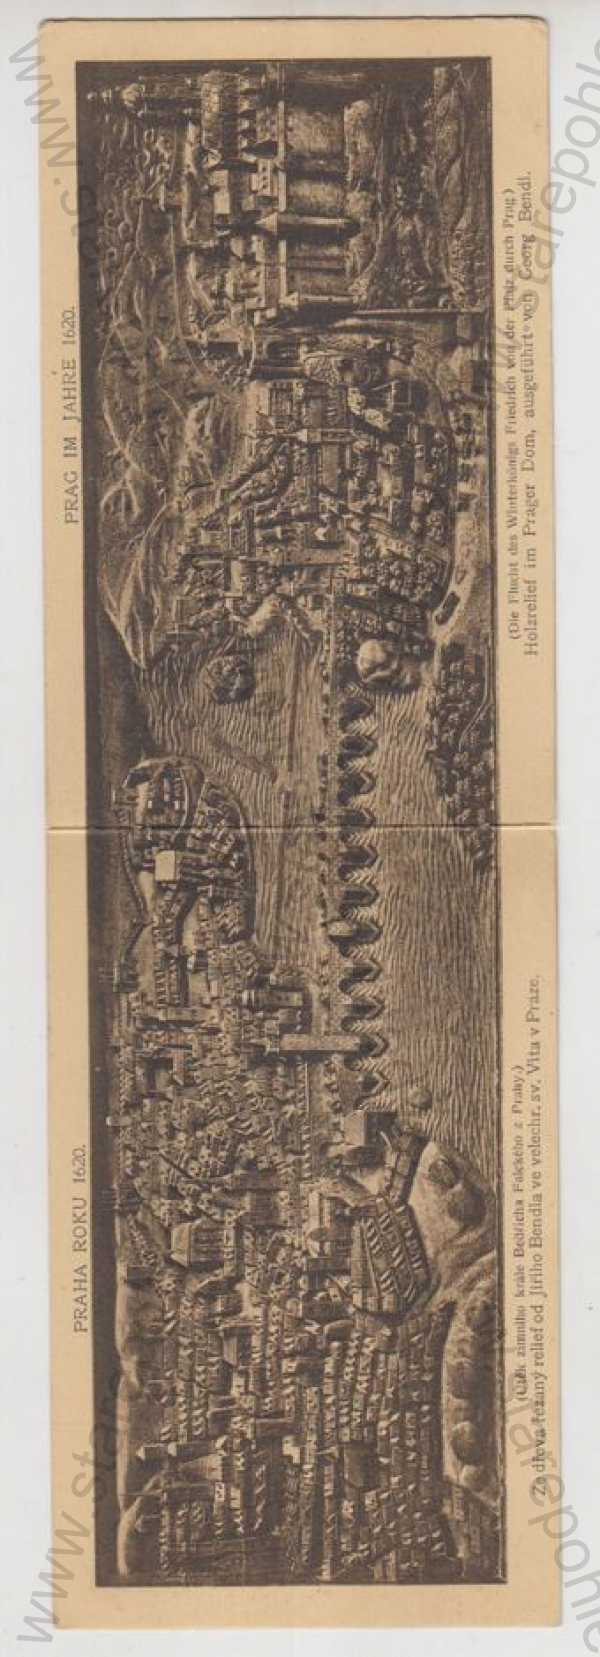  - Praha, historická - 1620, celkový pohled, litografie, otvírací karta